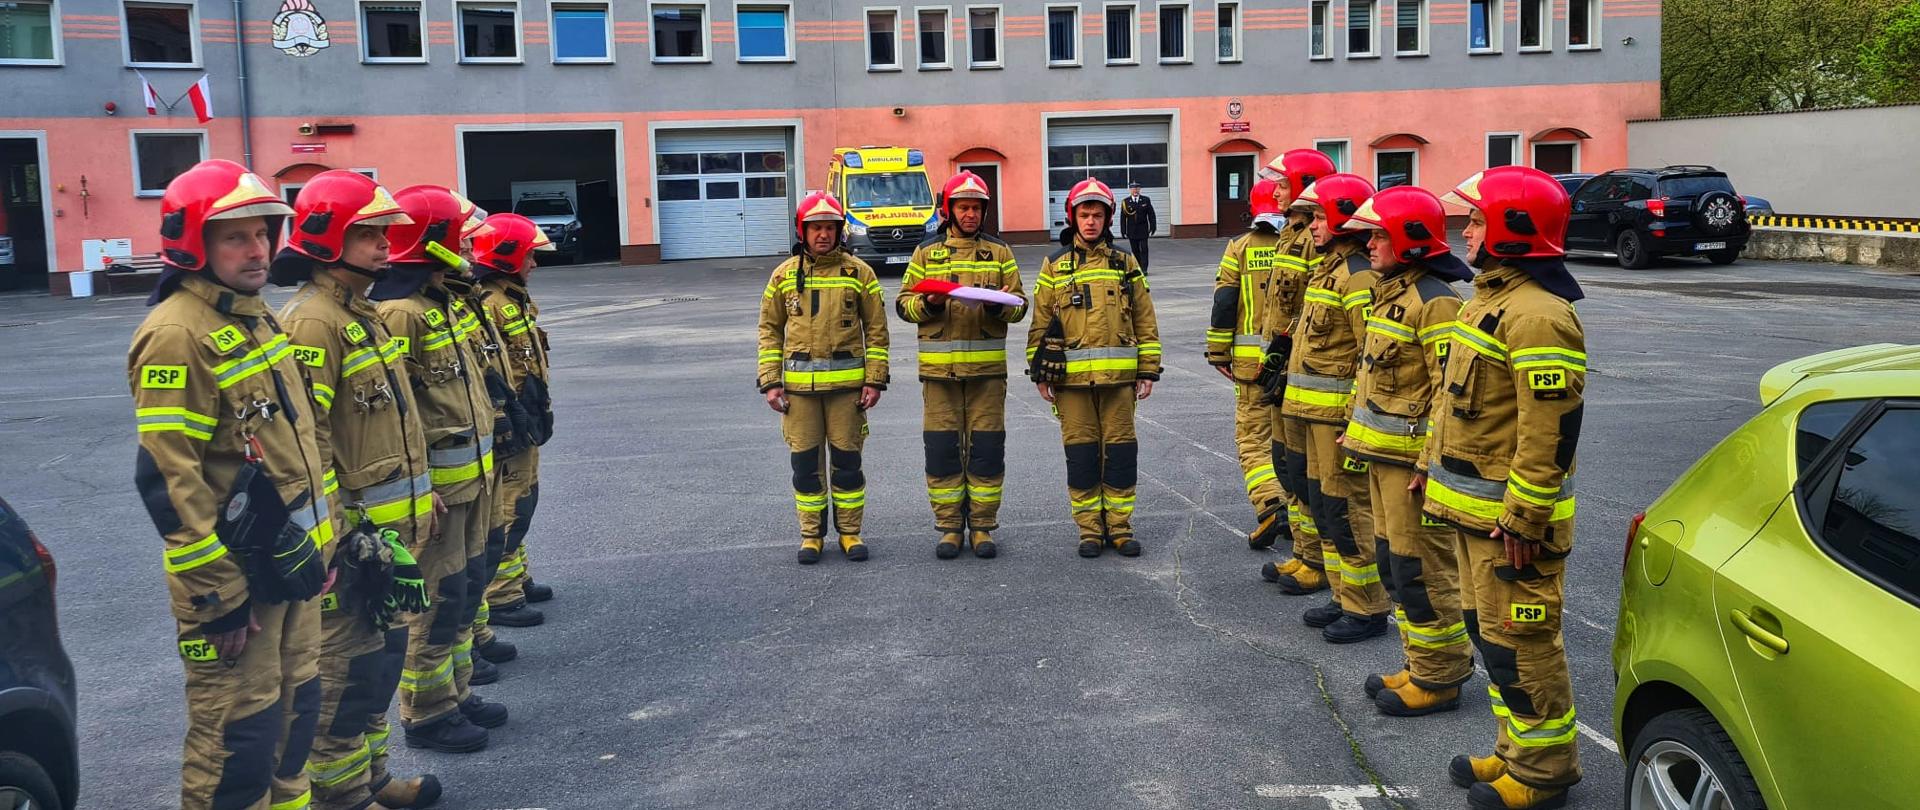 Obraz przedstawia strażaków Komendy Powiatowej Państwowej Straży Pożarnej w Jaworze podczas uroczystej zbiórki z okazji Dnia Flagi. Strażacy w umundurowaniu specjalnym stoją naprzeciw siebie w dwóch szeregach. W tle budynek komendy.